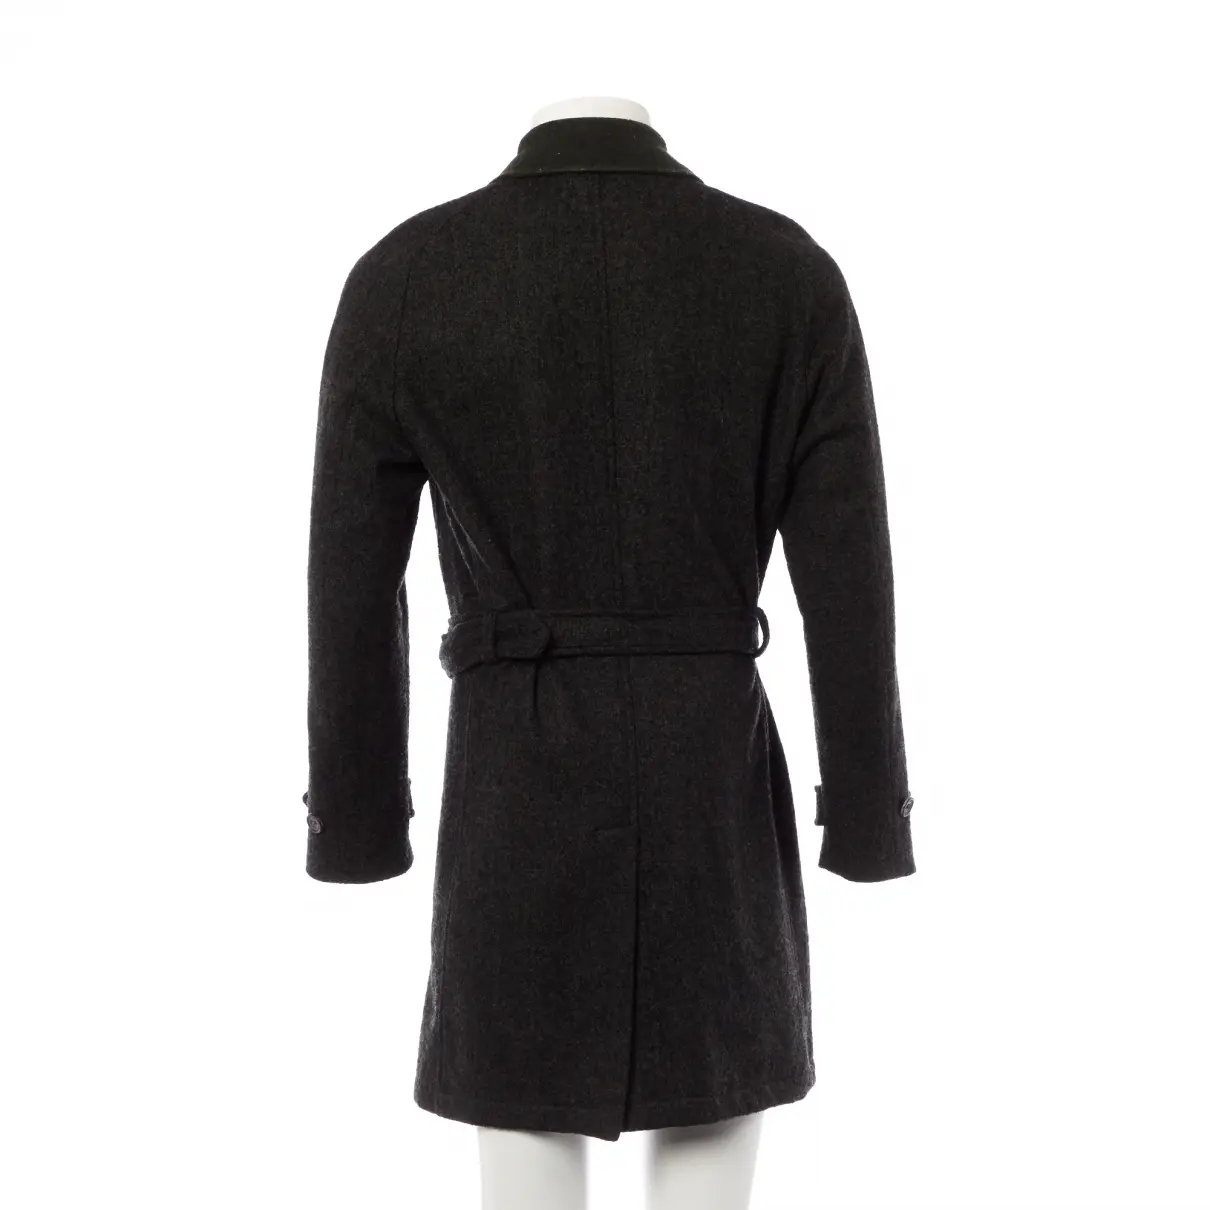 Buy Hardy Amies Wool coat online